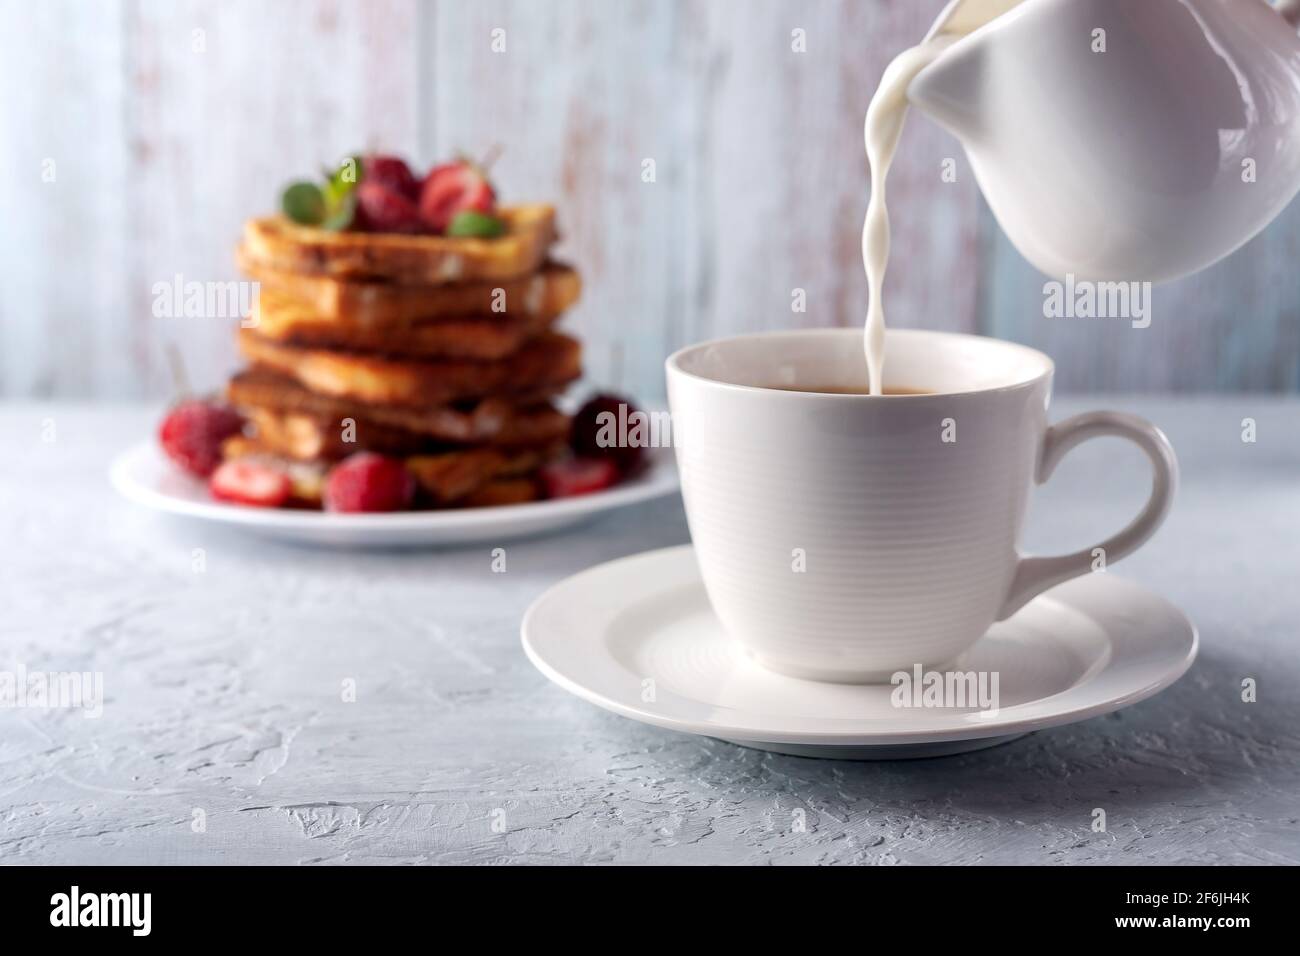 Eine Tasse Kaffee mit Rahm und French Toast mit Zimt und Erdbeeren. Frühstück am Morgen Stockfoto